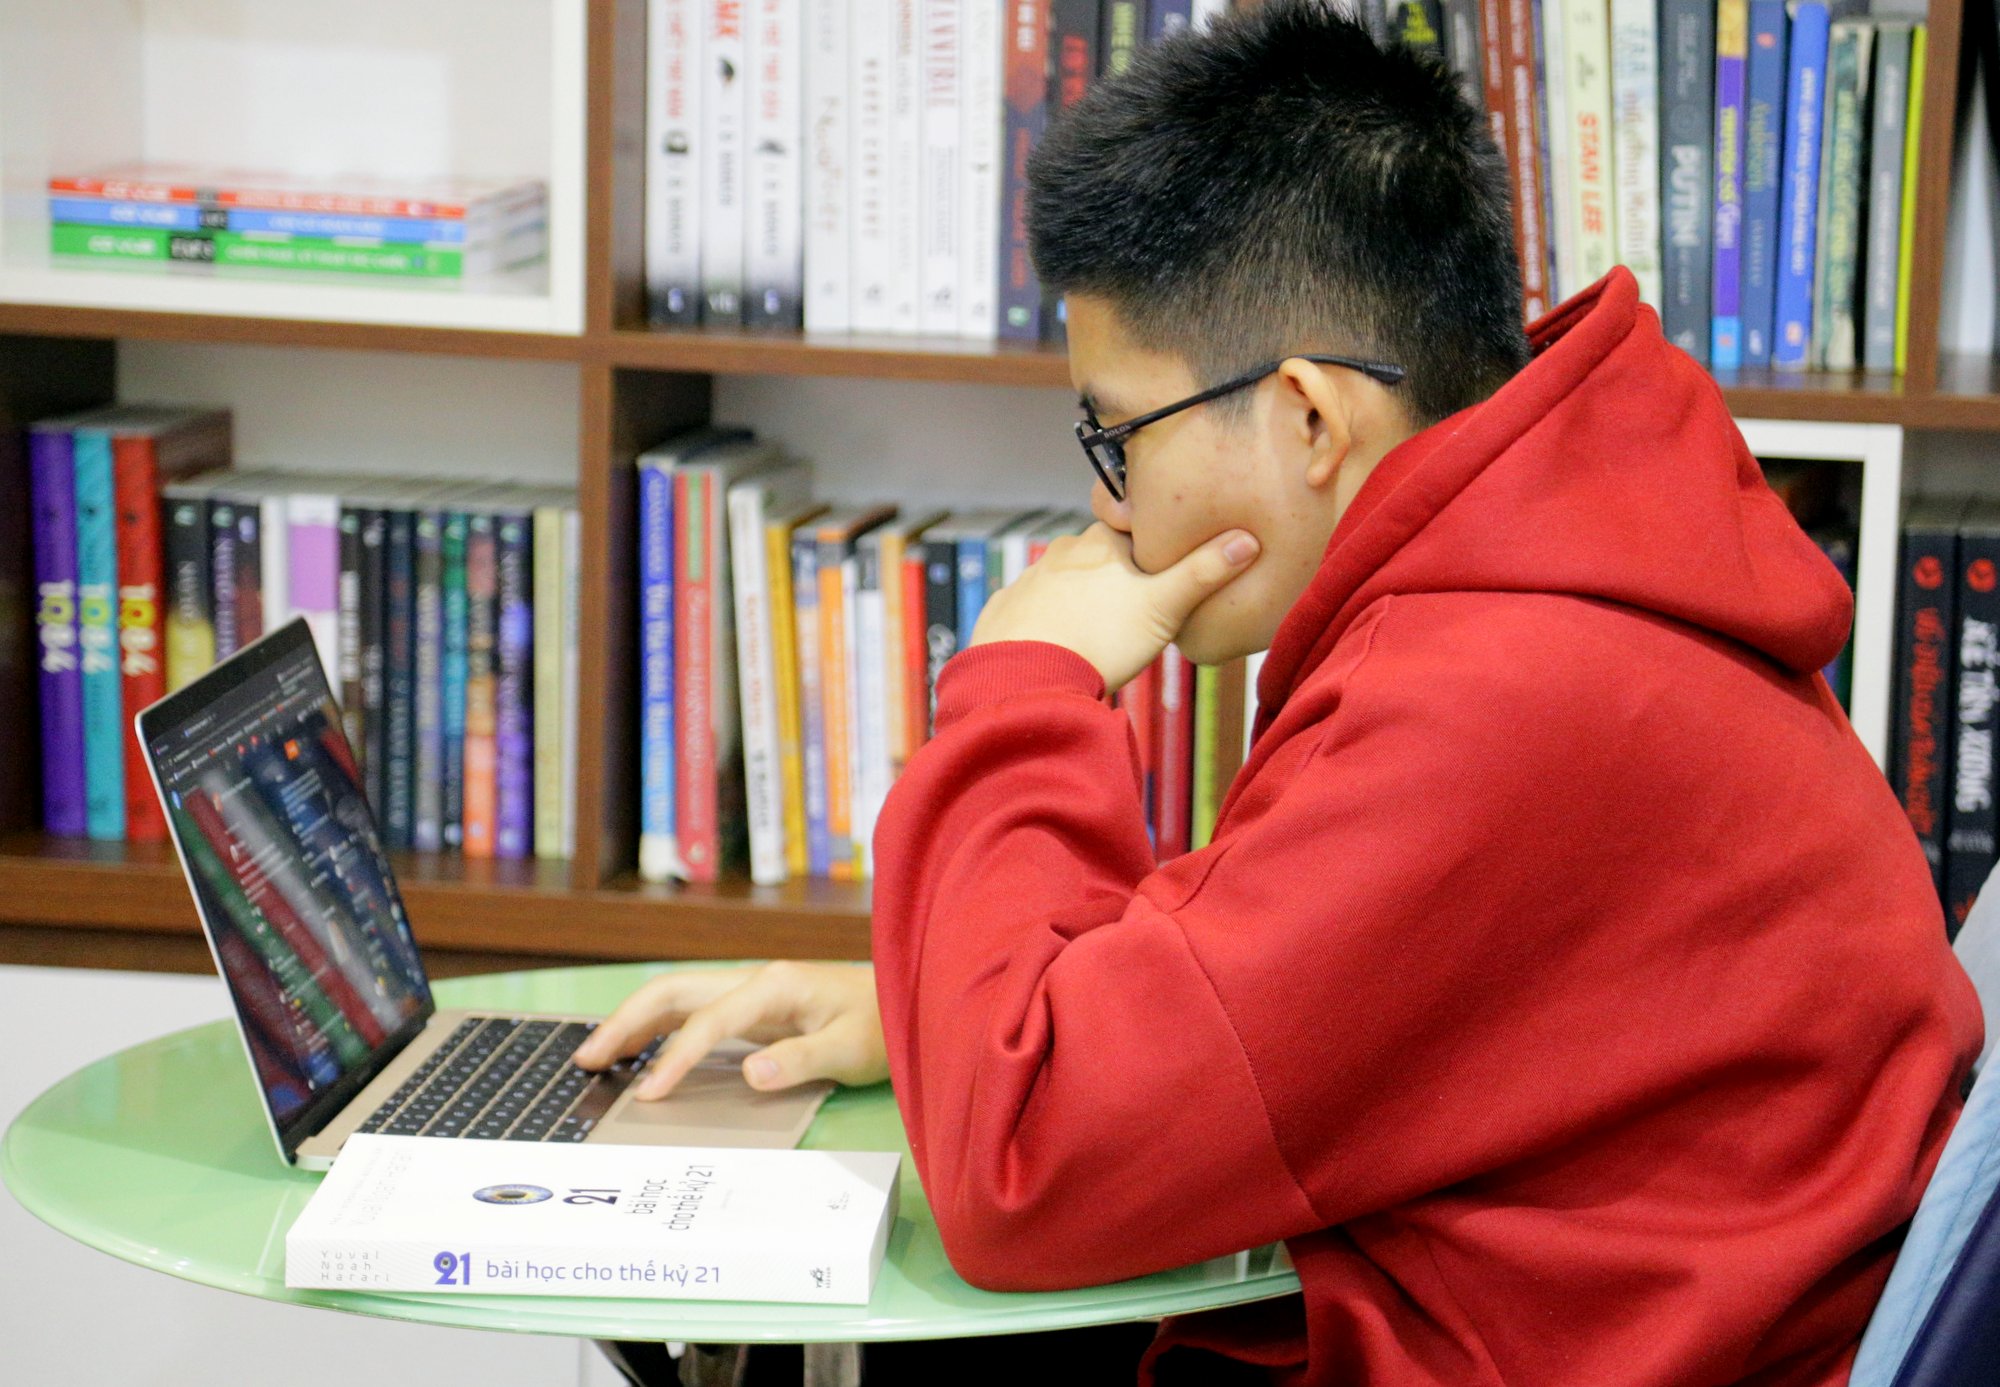 Đặc biệt, Khánh biết cách sử dụng rất hiệu quả máy tính kết nối internet và smartphone để phục vụ cho việc học tập, trau dồi kiến thức.